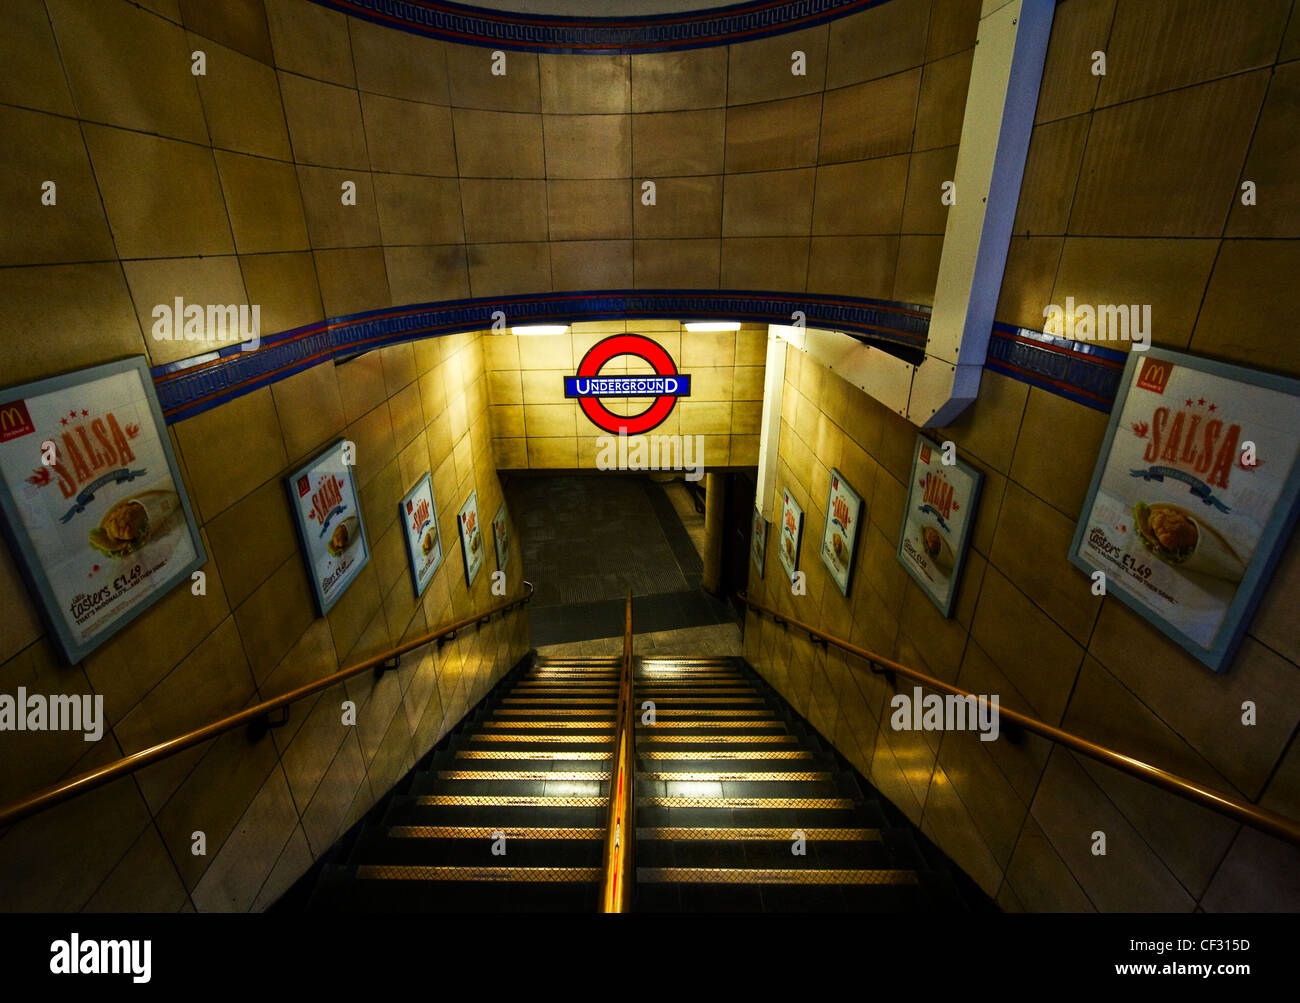 Los pasos que conducen hasta una estación de metro de Londres. Foto de stock